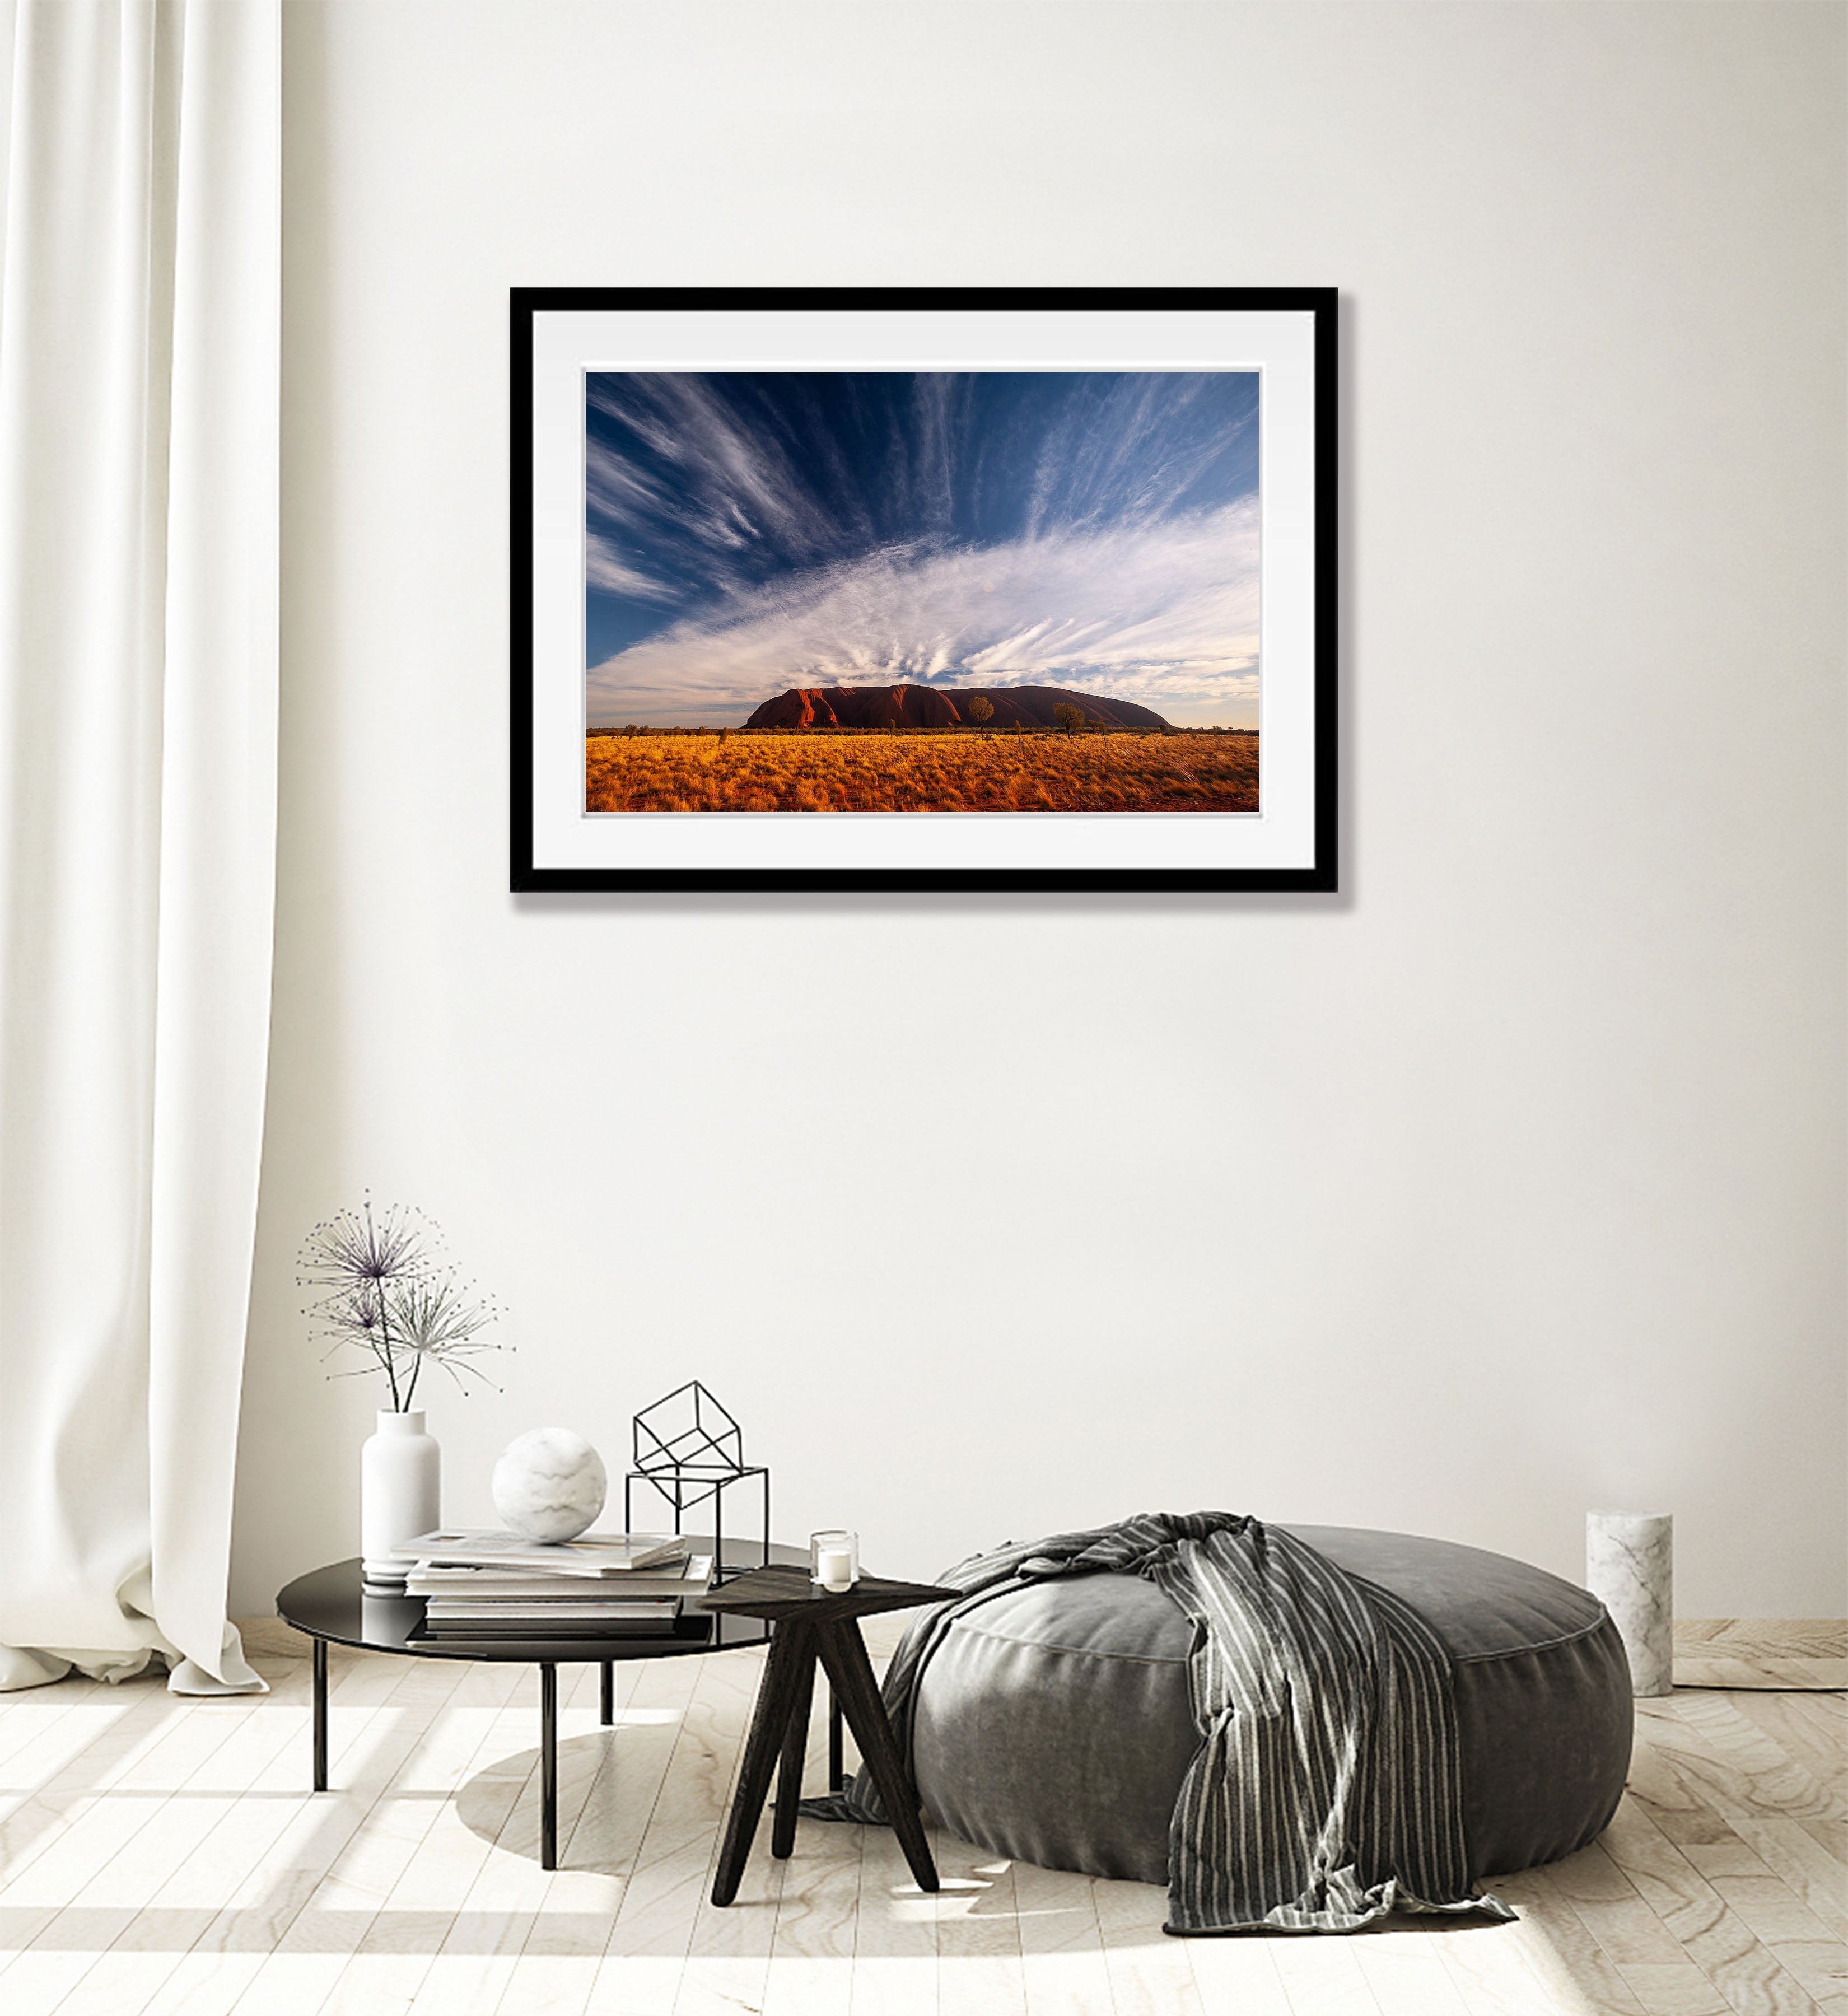 Uluru Sunrise with streaming clouds, Central Australia